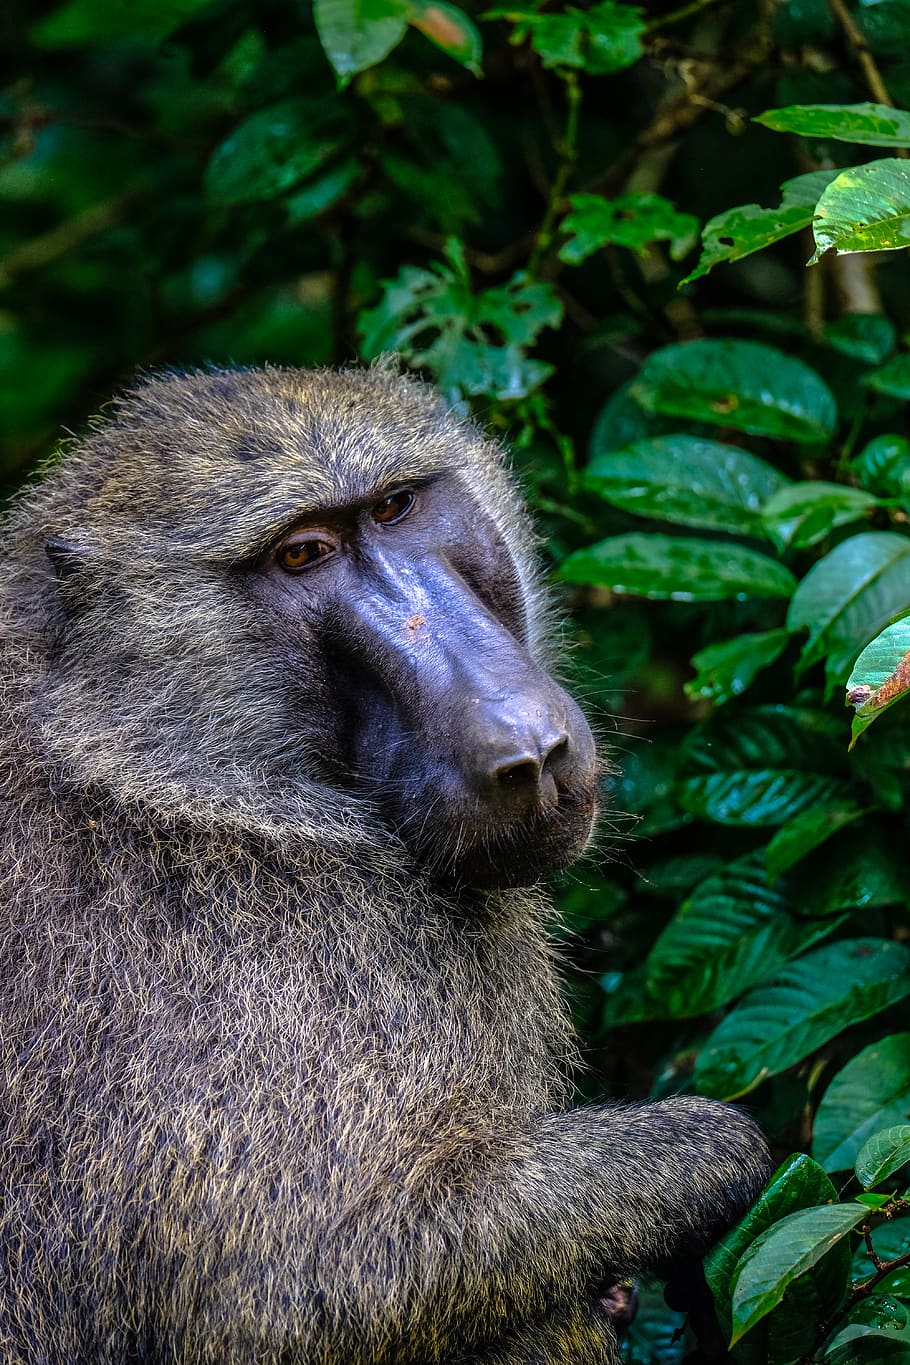 brown monkey near tree during daytime, animal, wildlife, mammal